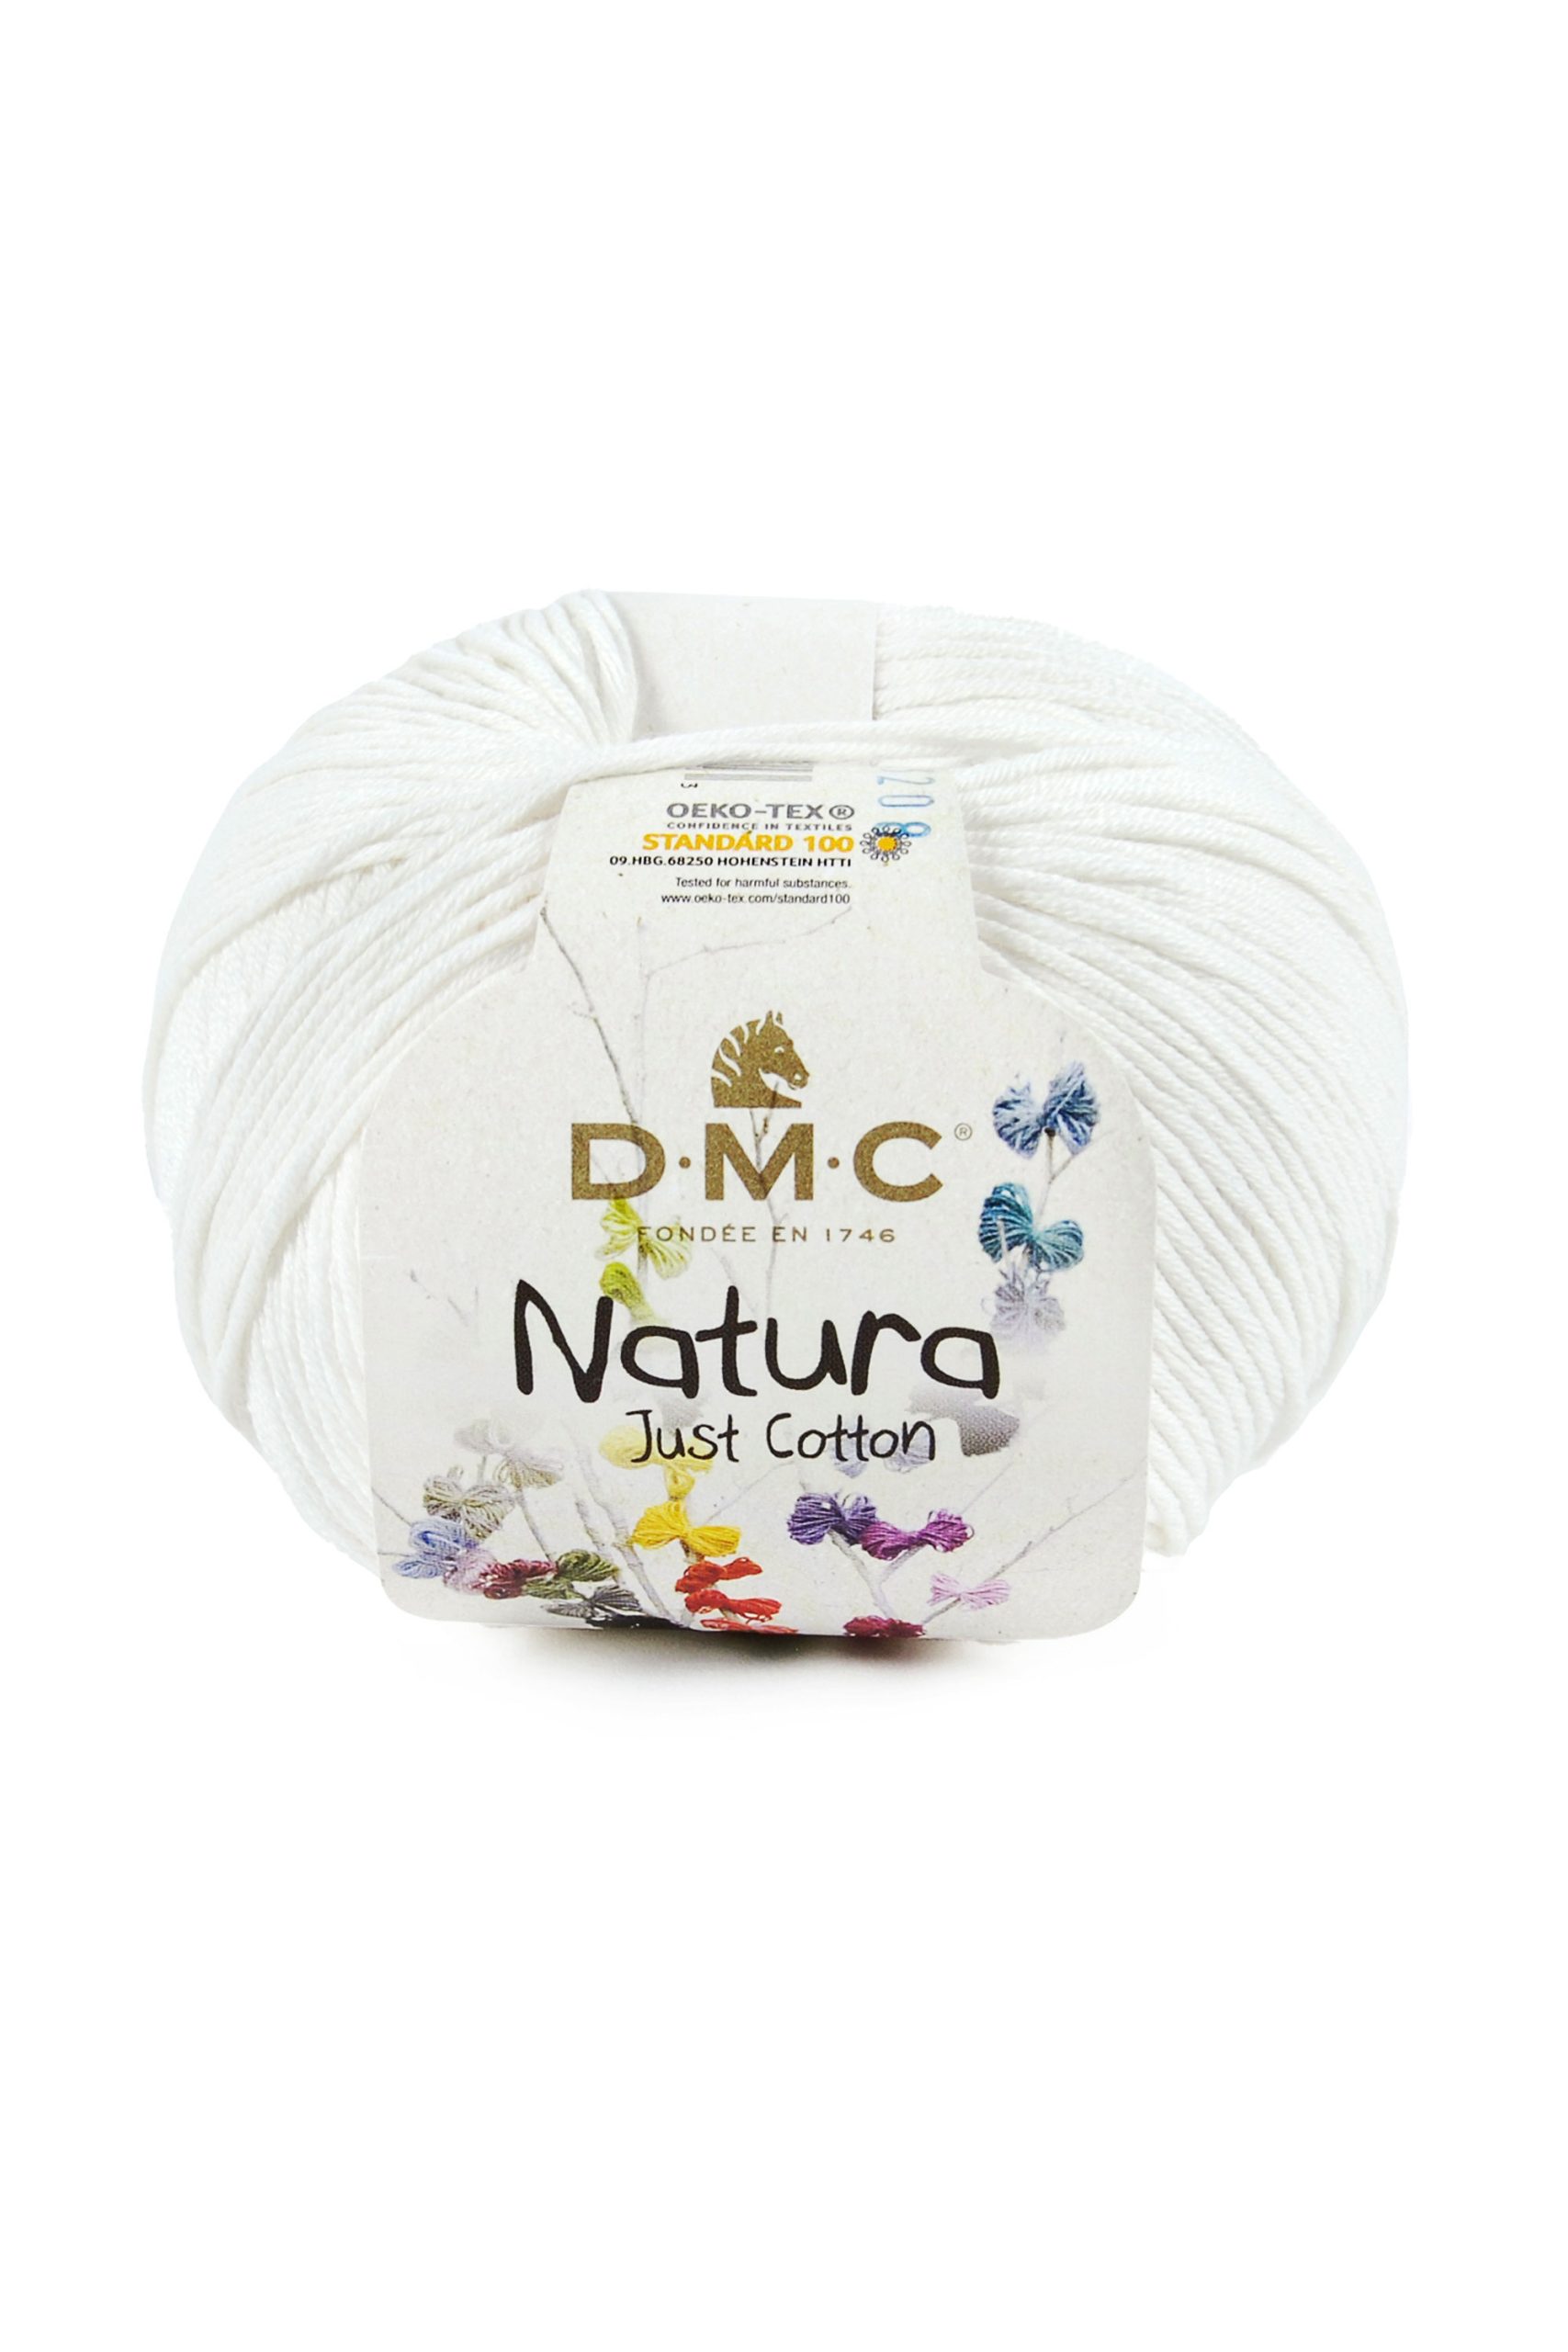 Cotone Dmc Natura Just Cotton Colore N02